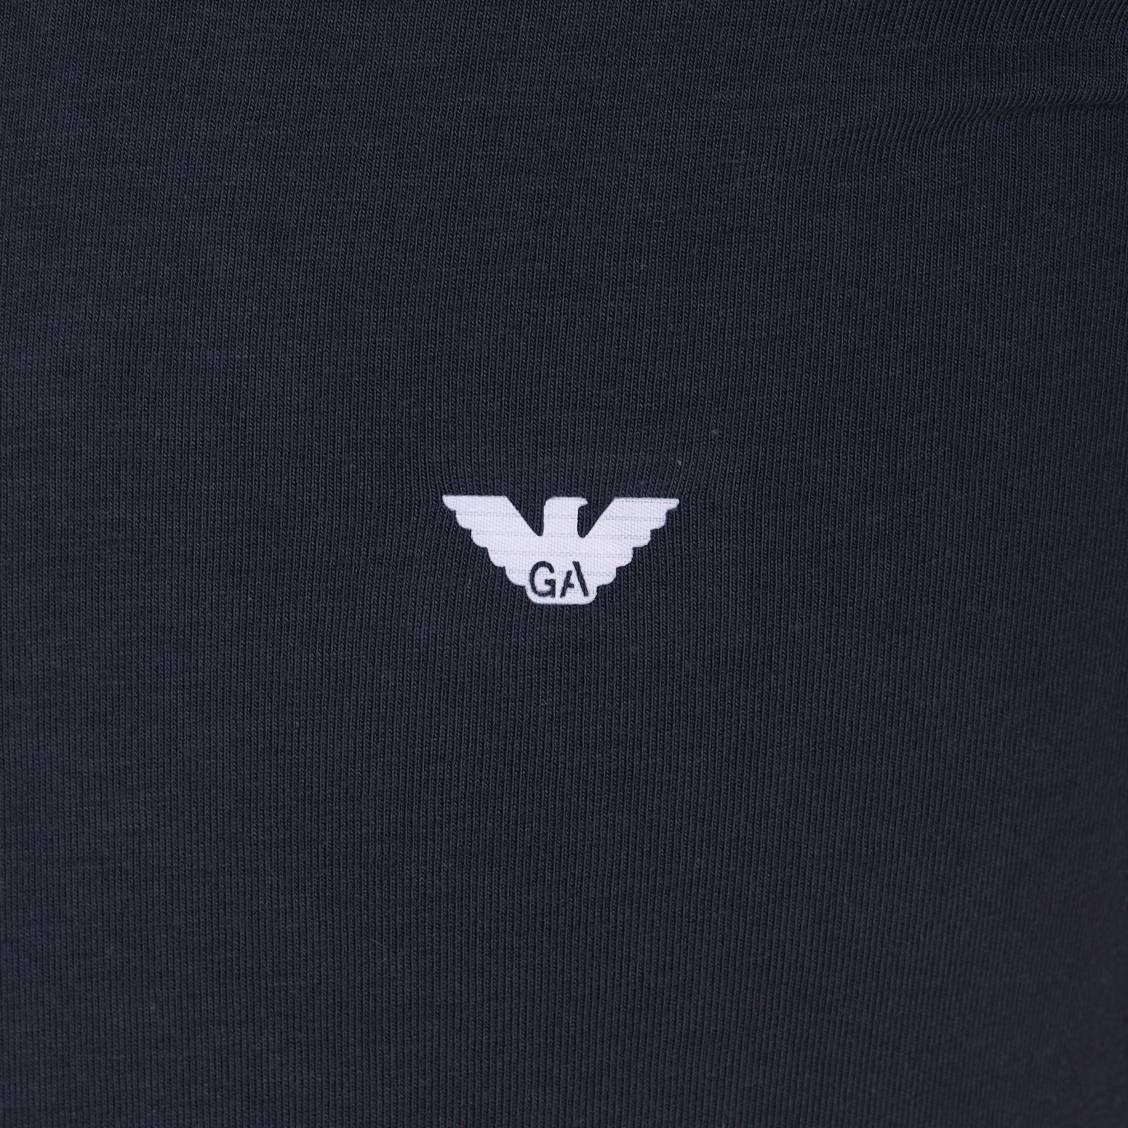 Giorgio Armani Logo On Cloth Wallpaper